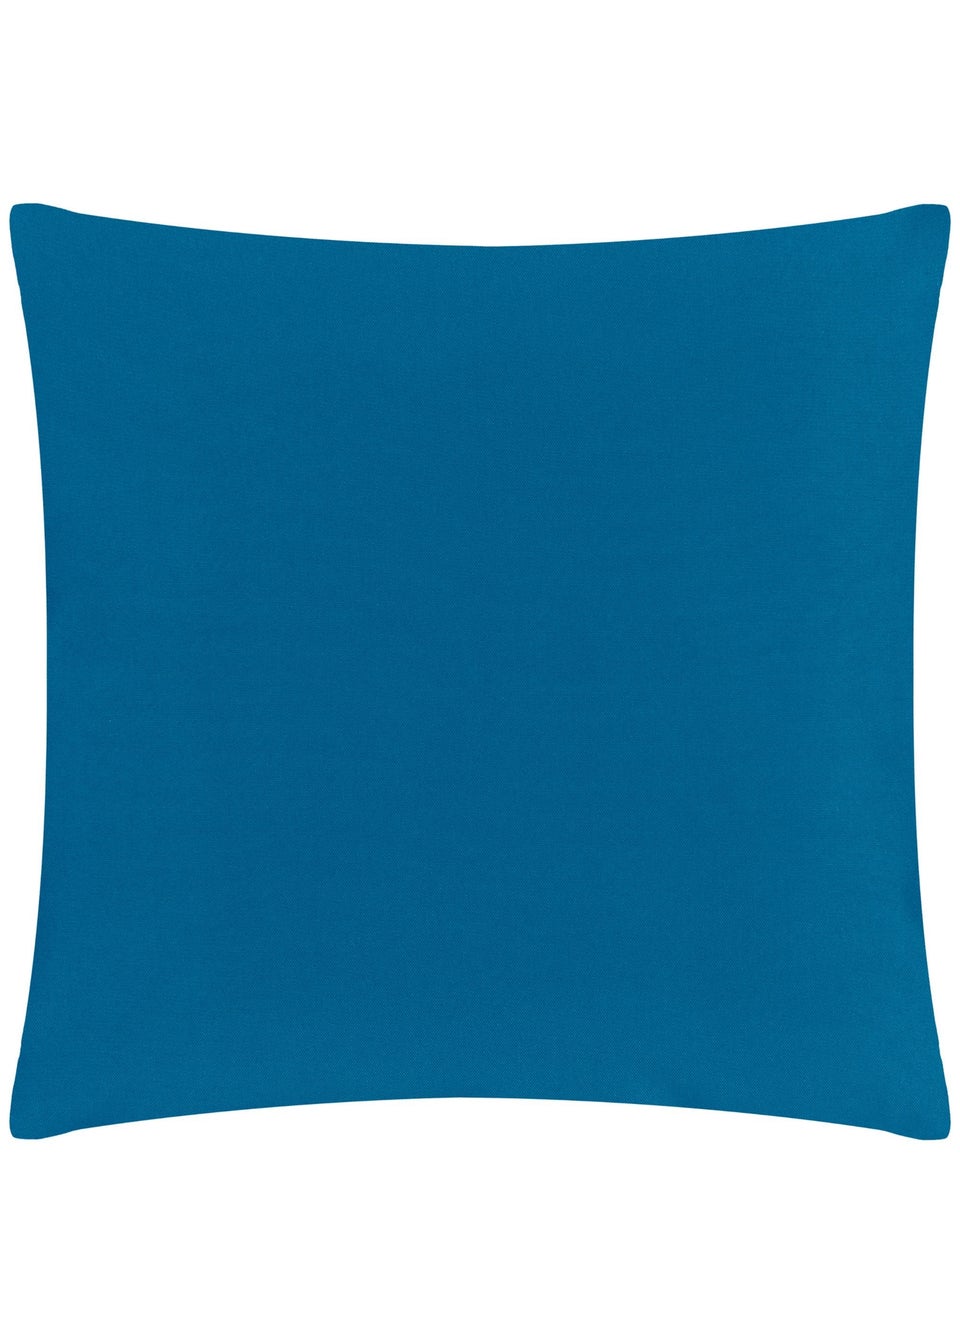 furn. Blue Aljento Filled Outdoor Cushions (43cm x 43cm x 8cm)